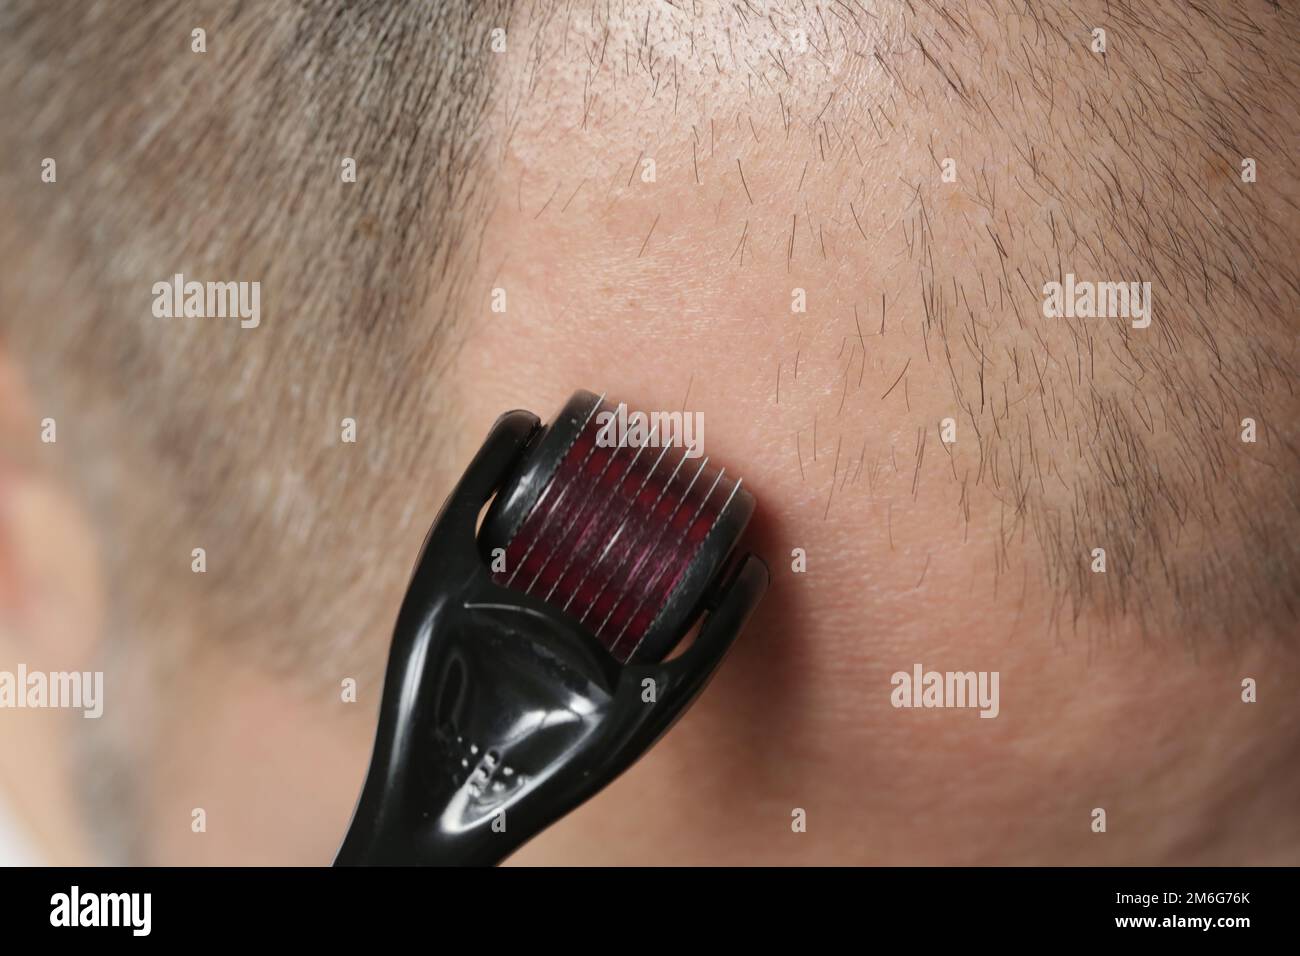 Uomini che utilizzano il rullo derma microneedle sulla testa per stimolare la crescita di nuovi capelli. Trattamento semplice ed economico per l'alopecia. Foto Stock